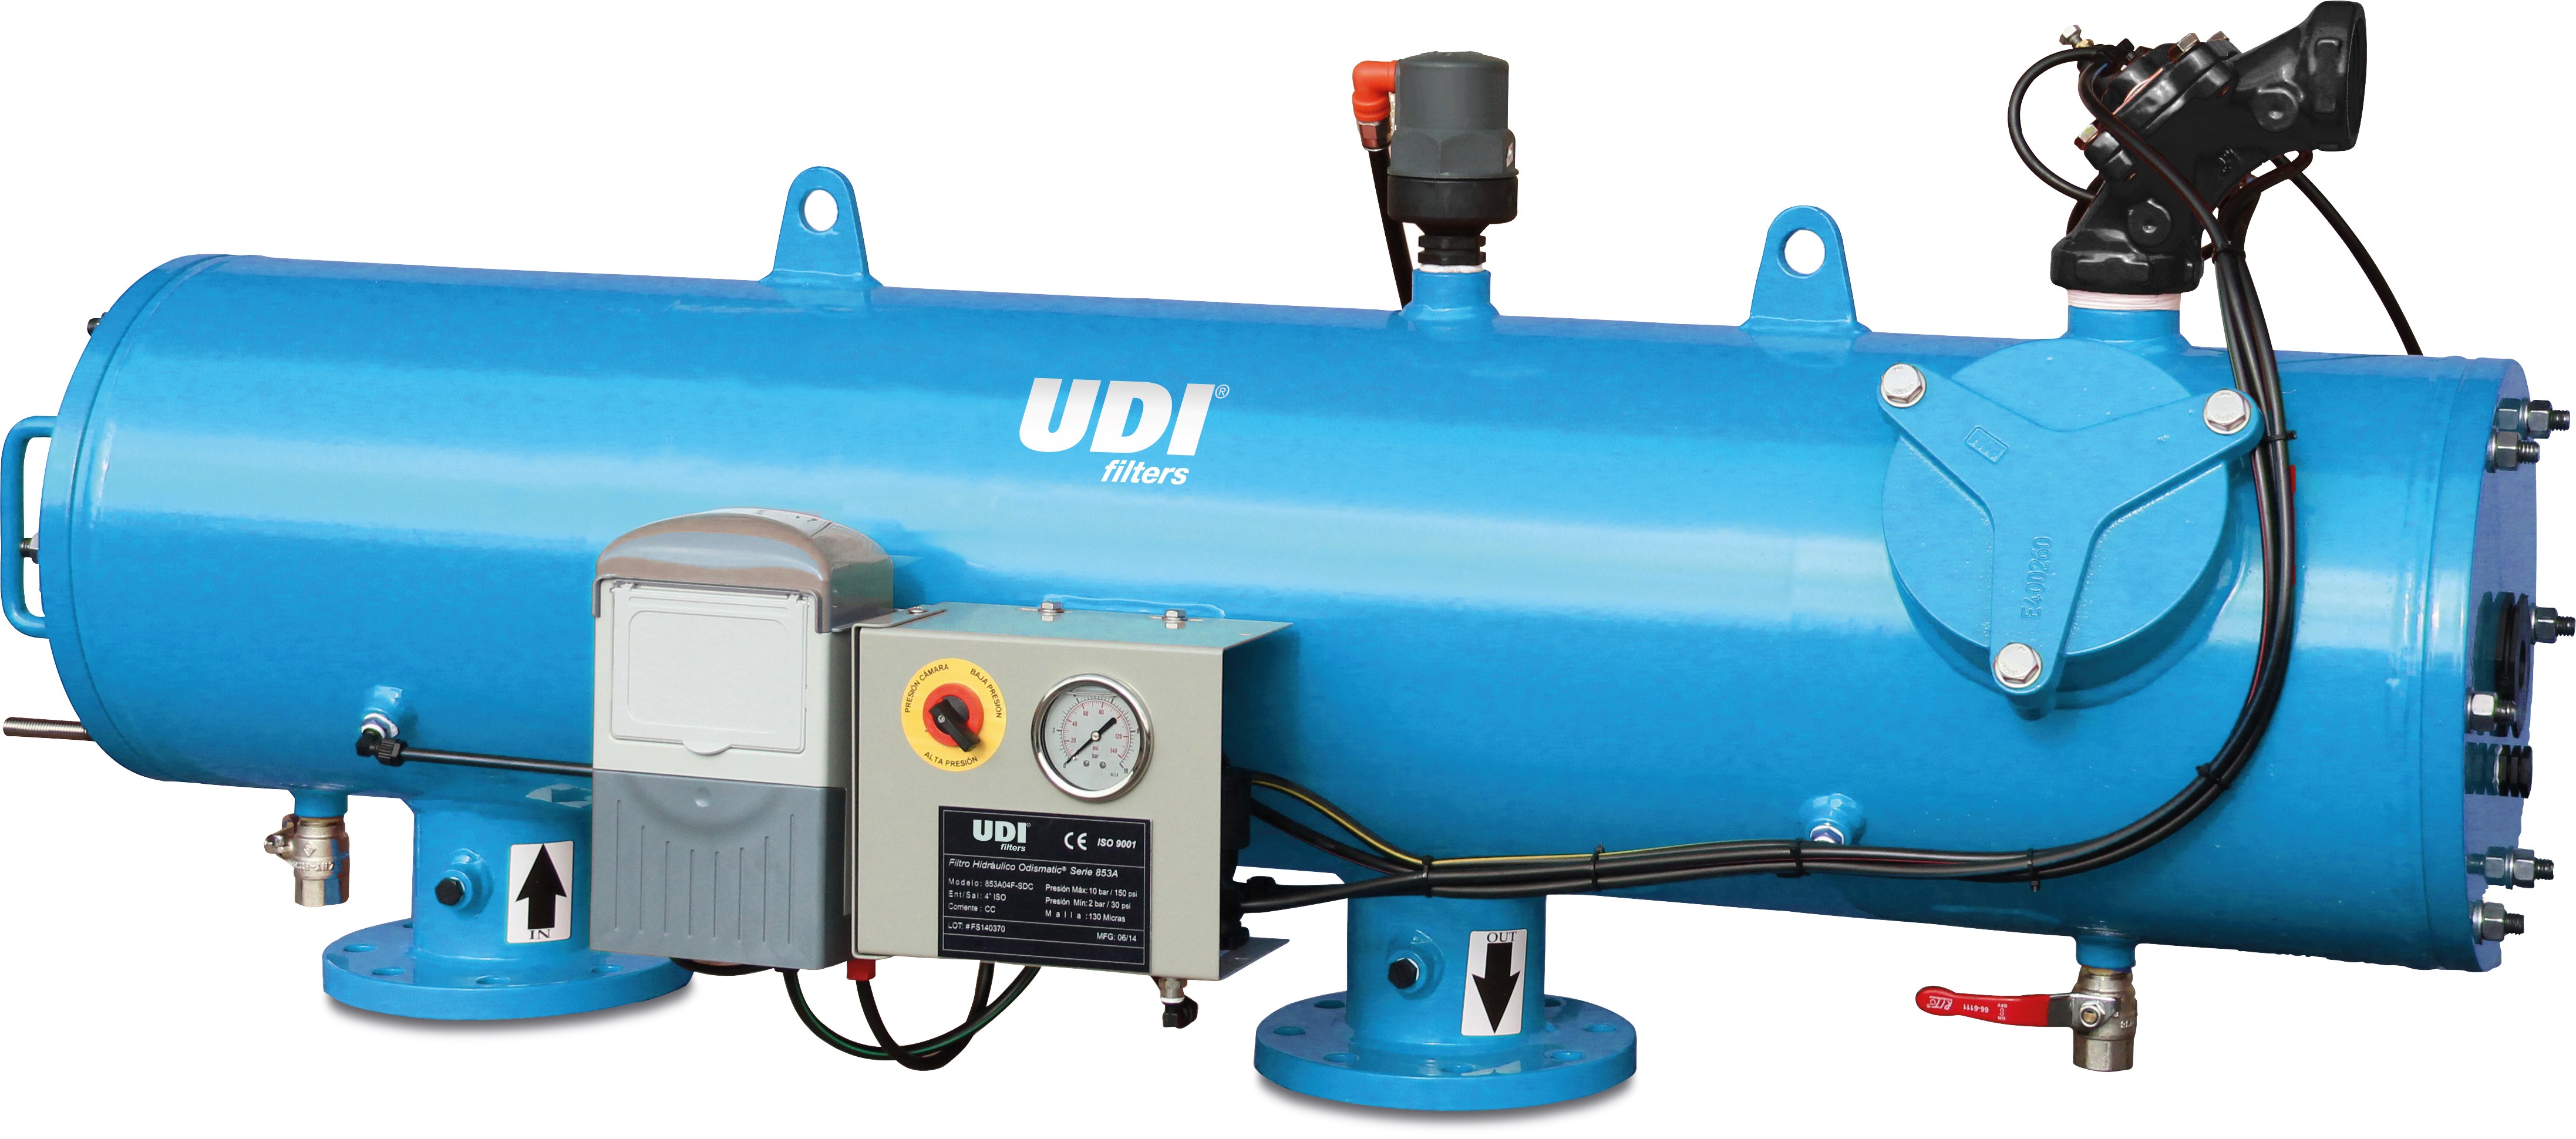 Automatisch hydraulischer Filter, Typ UDI